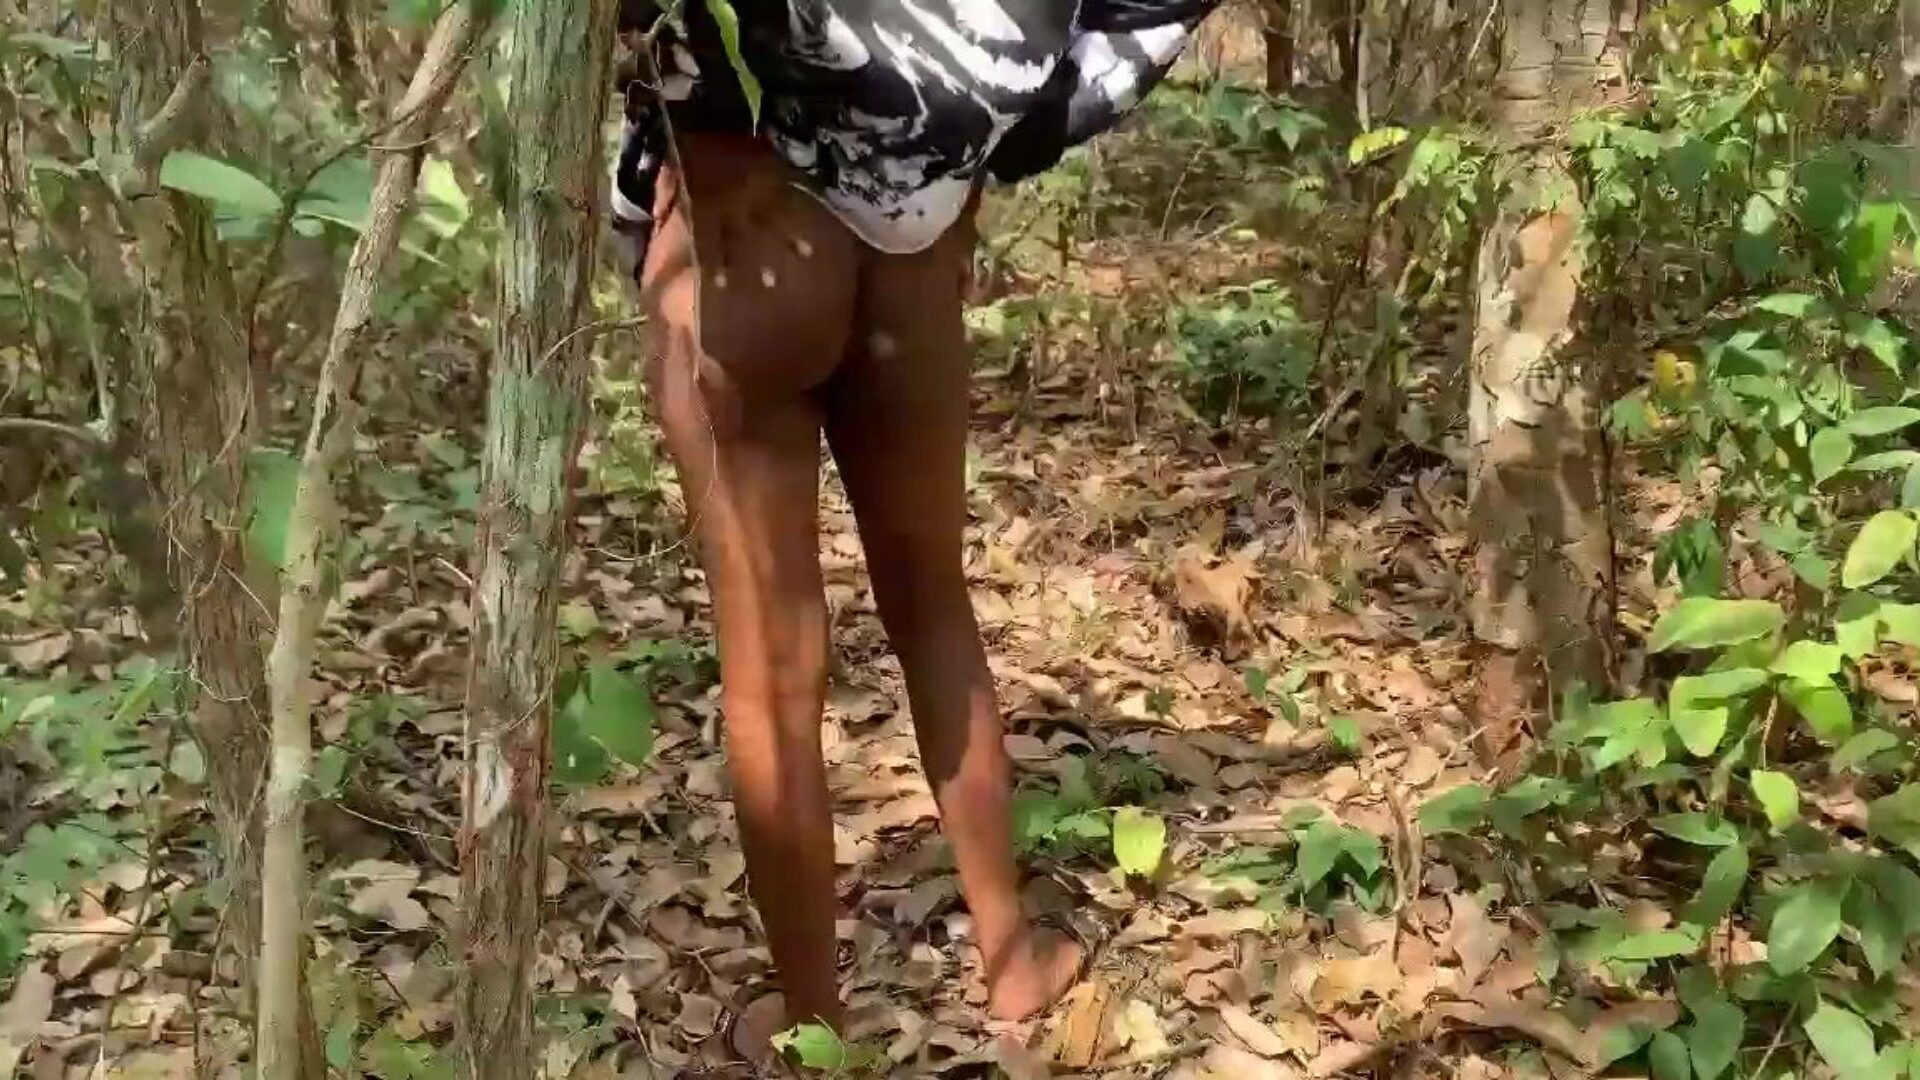 universitetslektor knullar sin student i busken för att ge hennes godkännande i sina tentor